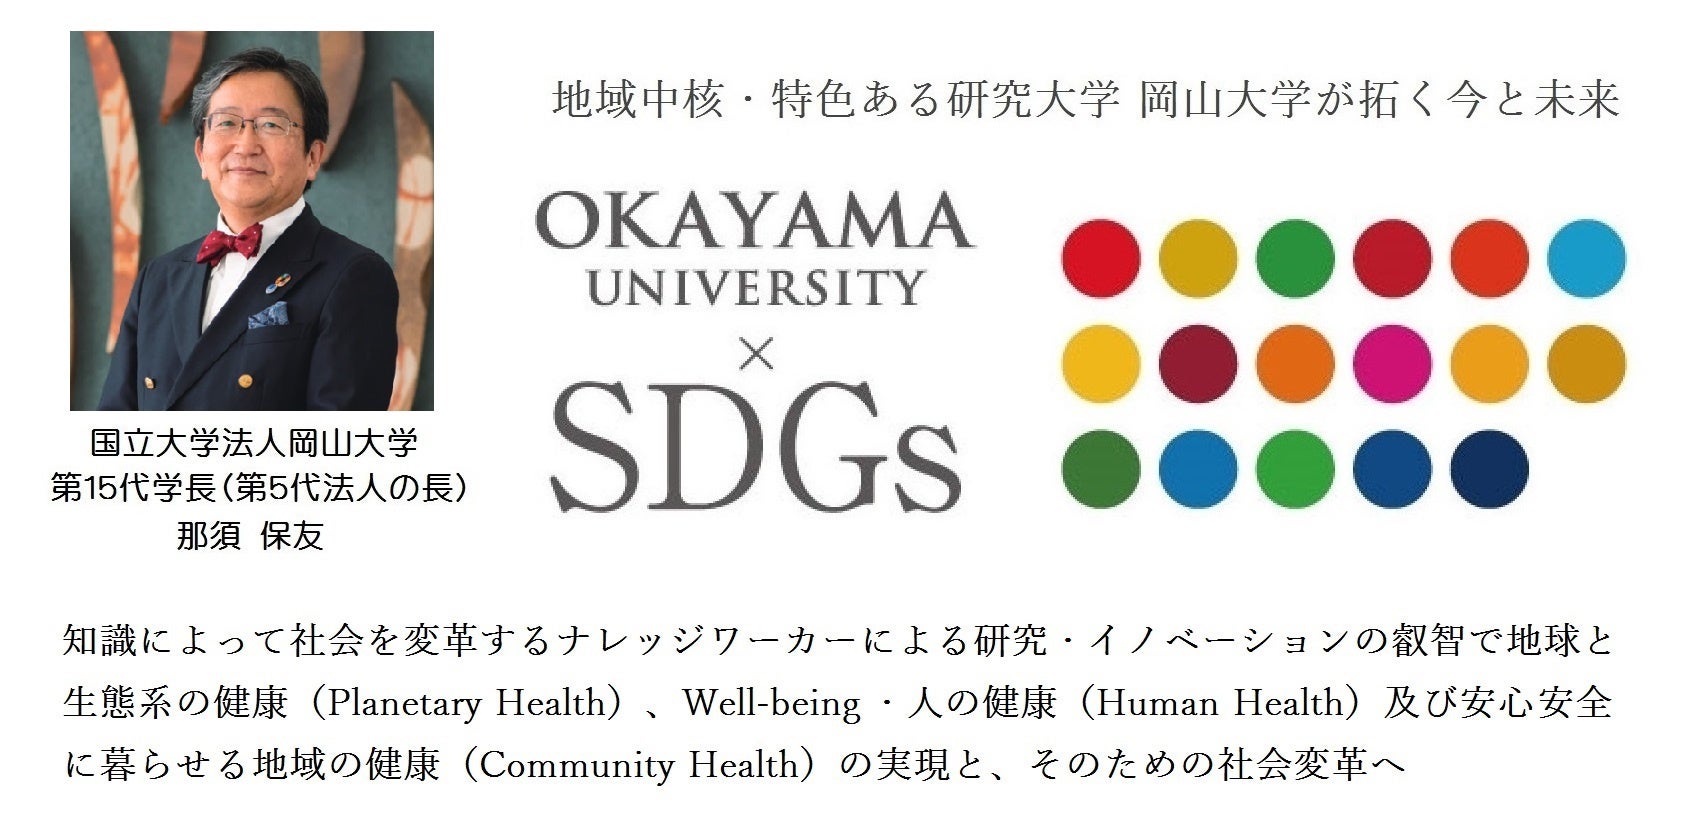 【岡山大学】岡山大学生による製品のCO2排出量可視化チャレンジ成果報告会を開催